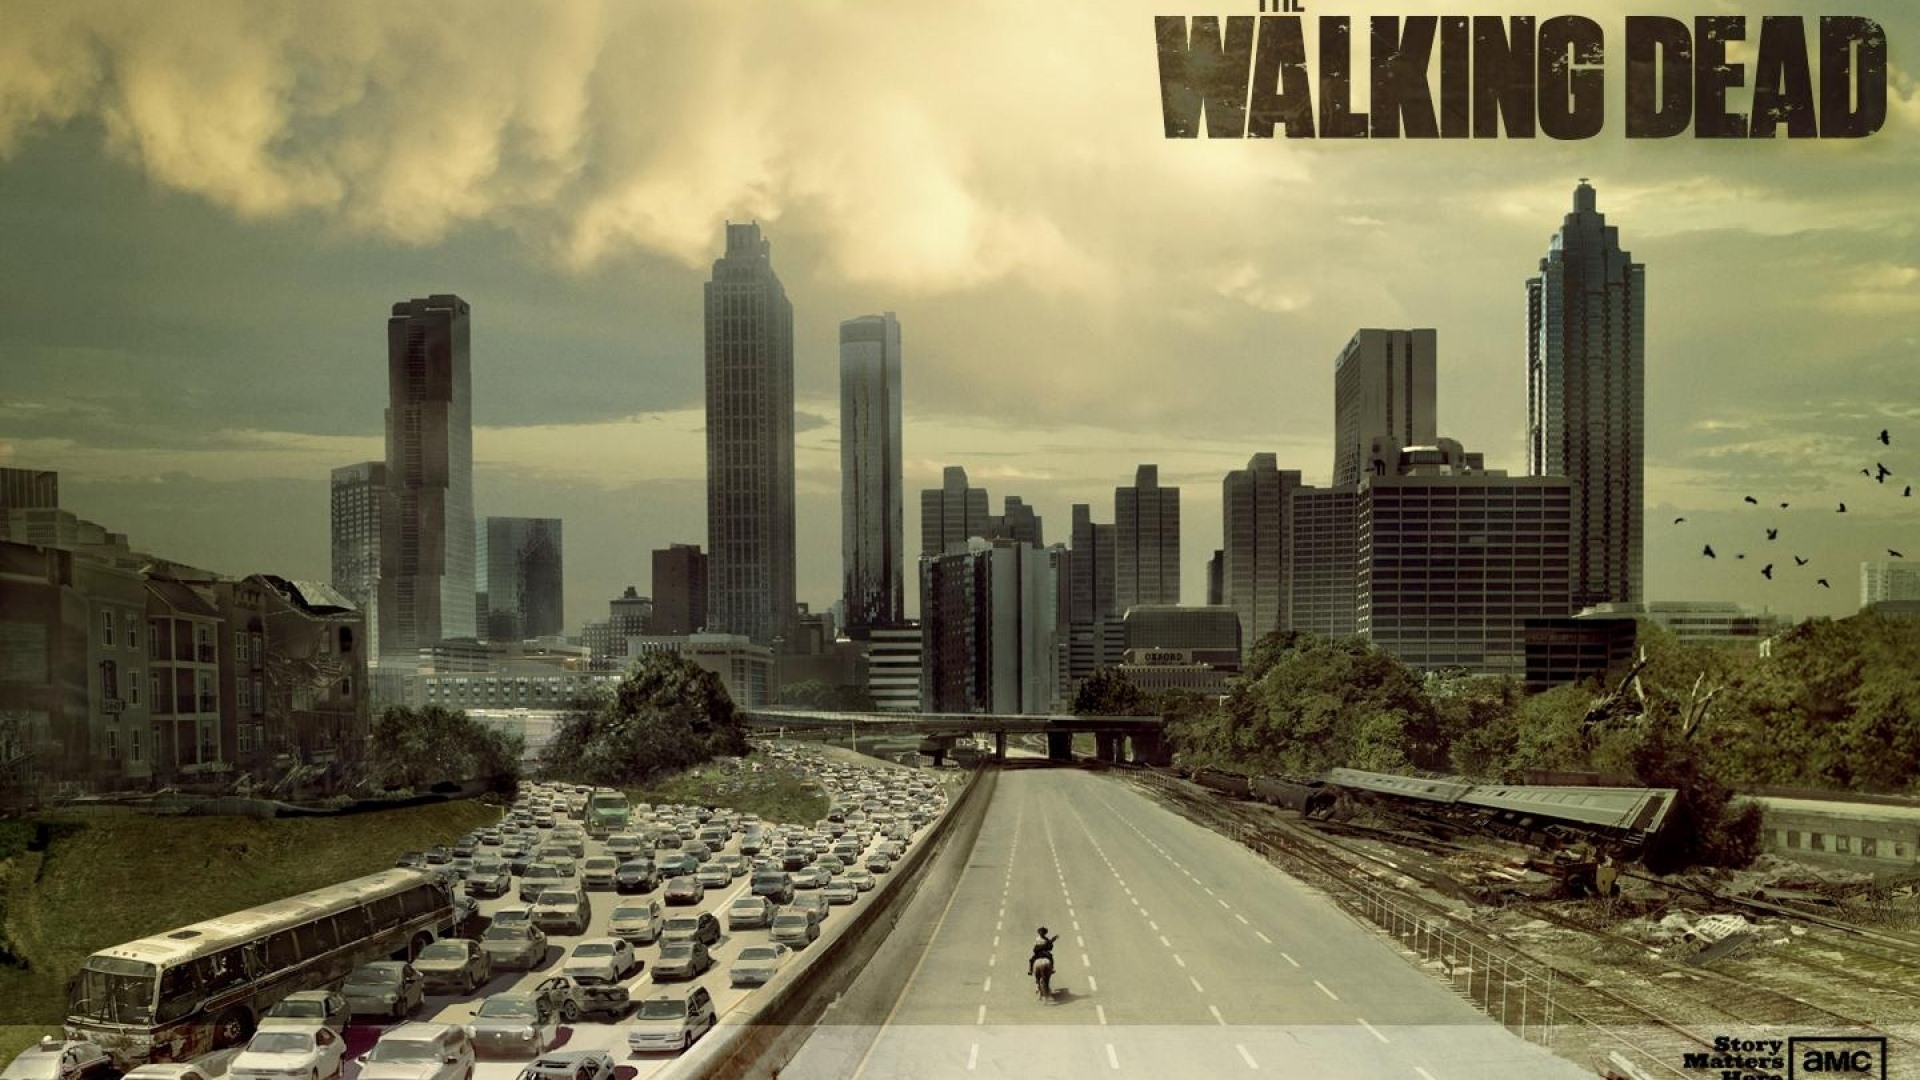 The Walking Dead HD wallpapers #5 - 1920x1080